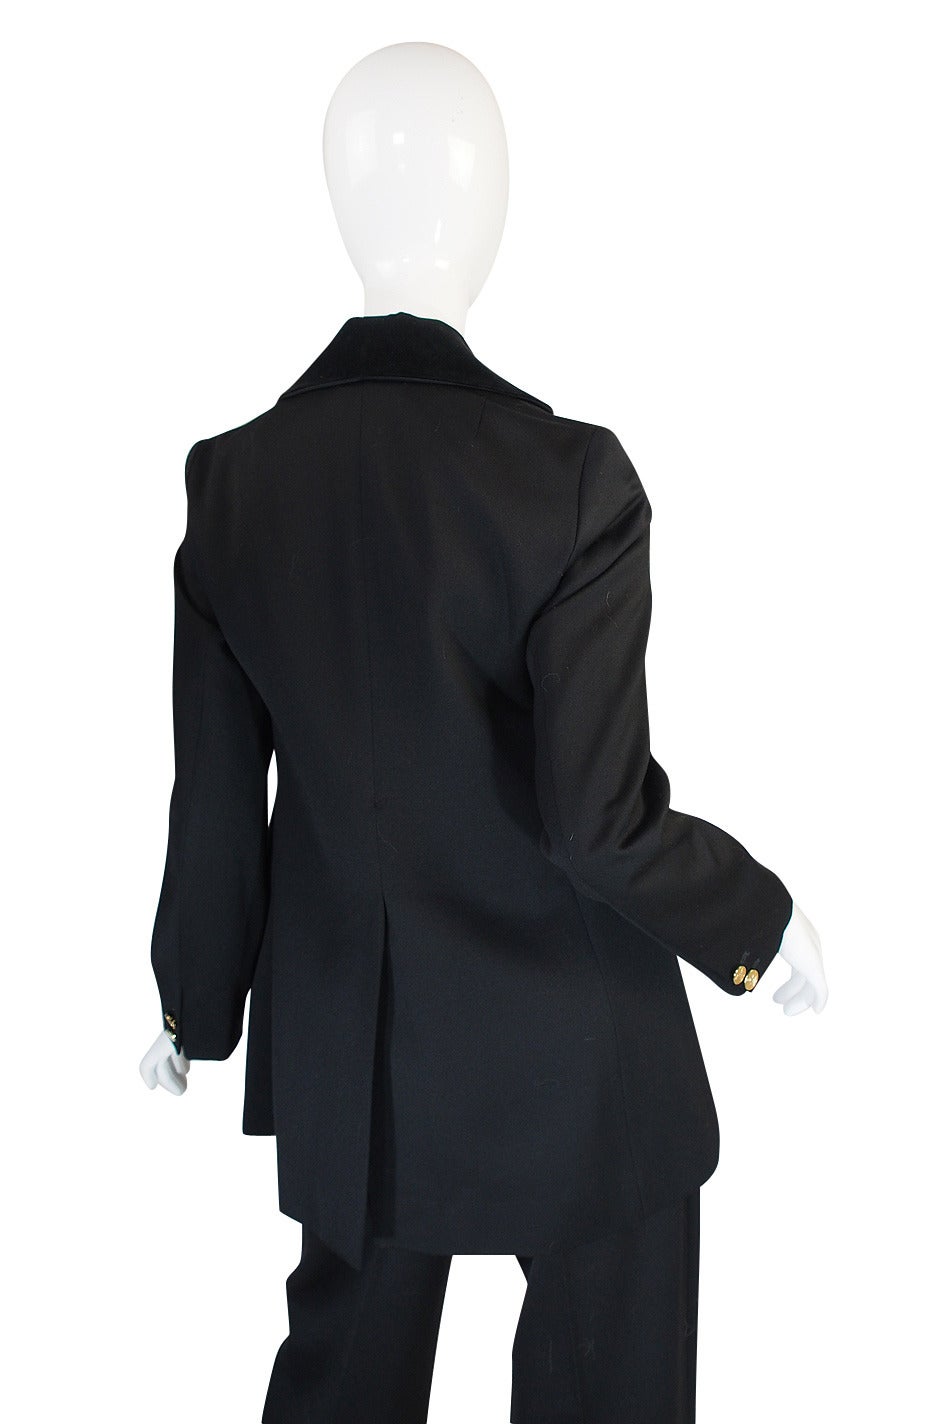 Rare 1990s Vivienne Westwood Black Tuxedo Suit 2